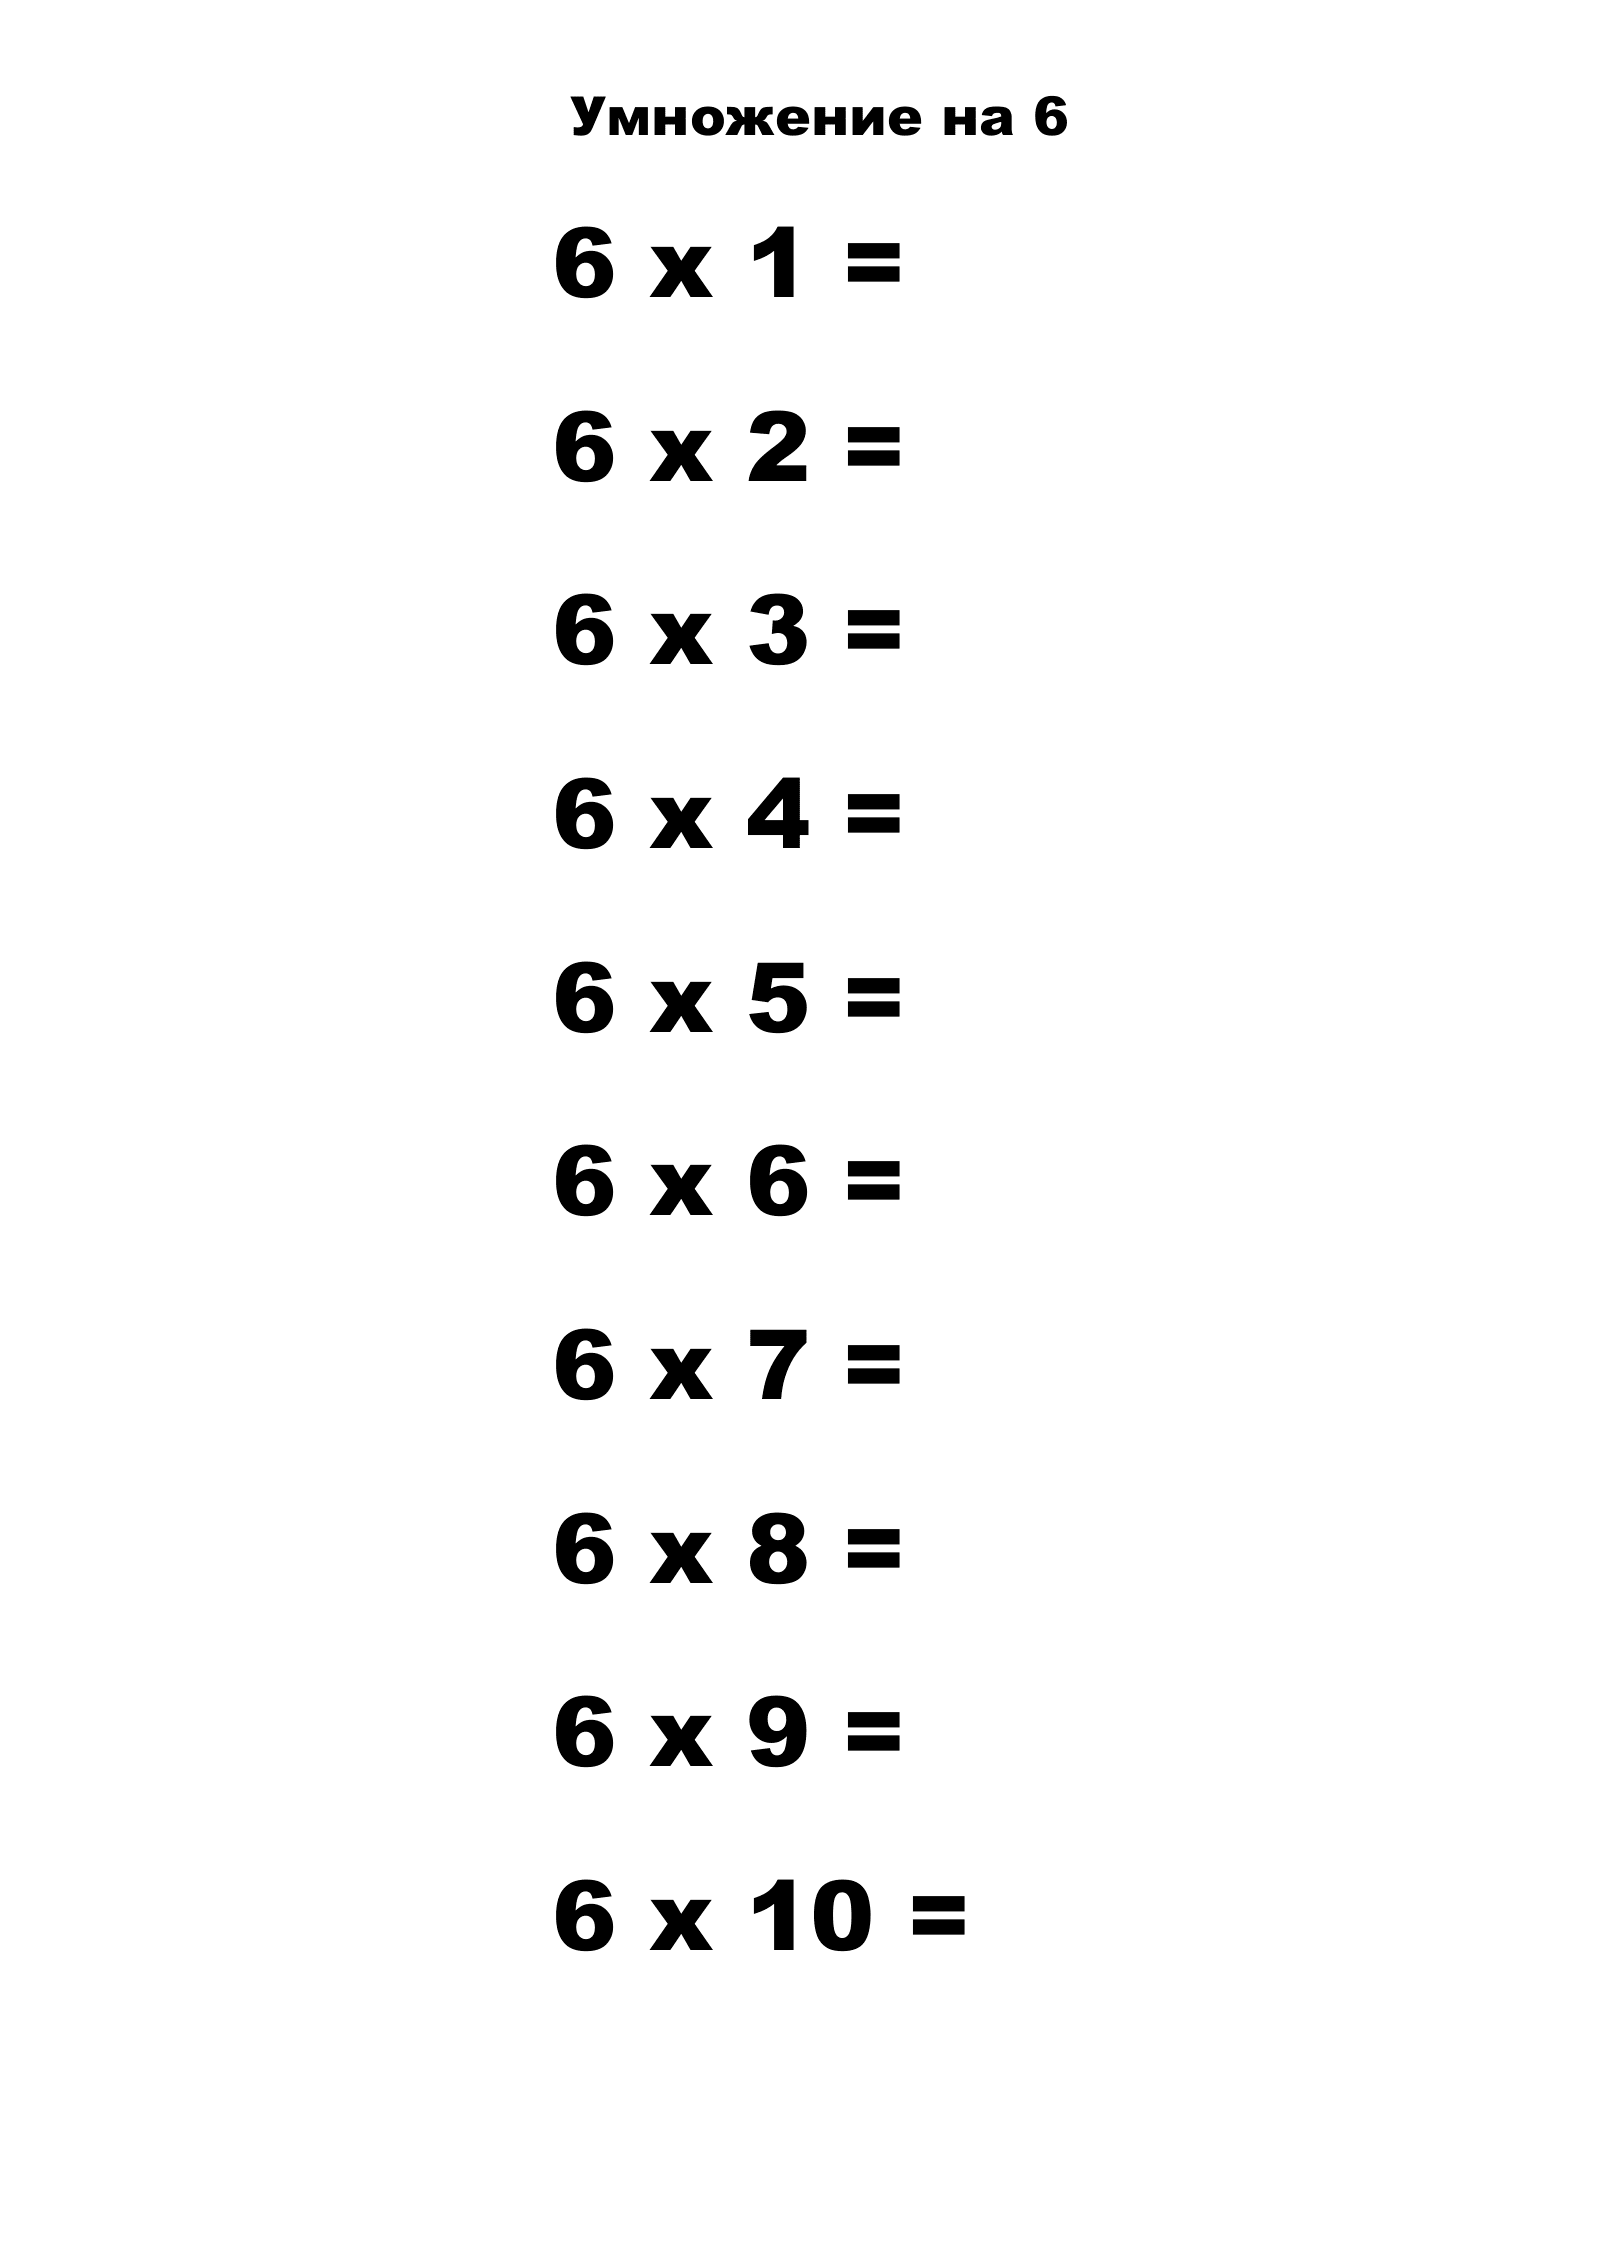 Таблица умножения на 6 без ответов. Распечатать